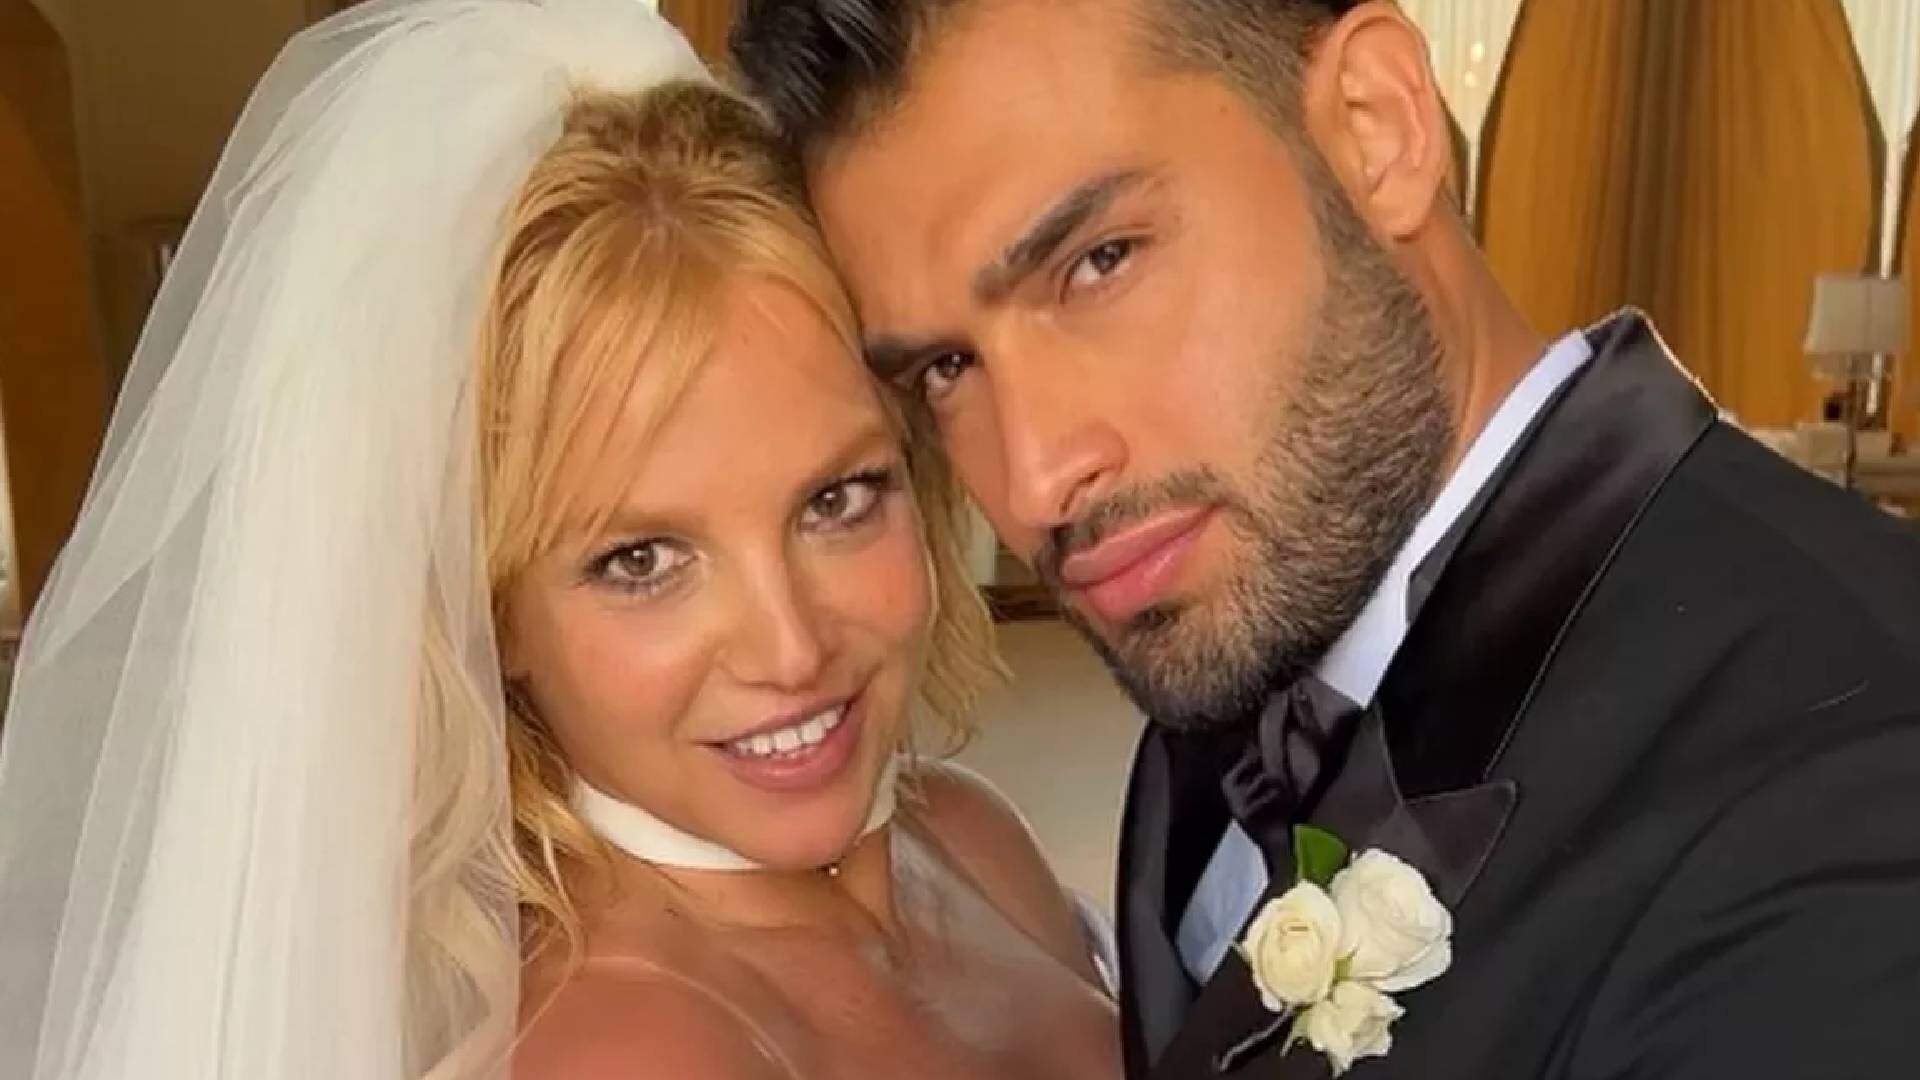 “Casamento de conto de fadas”: confira fotos e detalhes da cerimônia de Britney Spears e Sam Asghari - Metropolitana FM